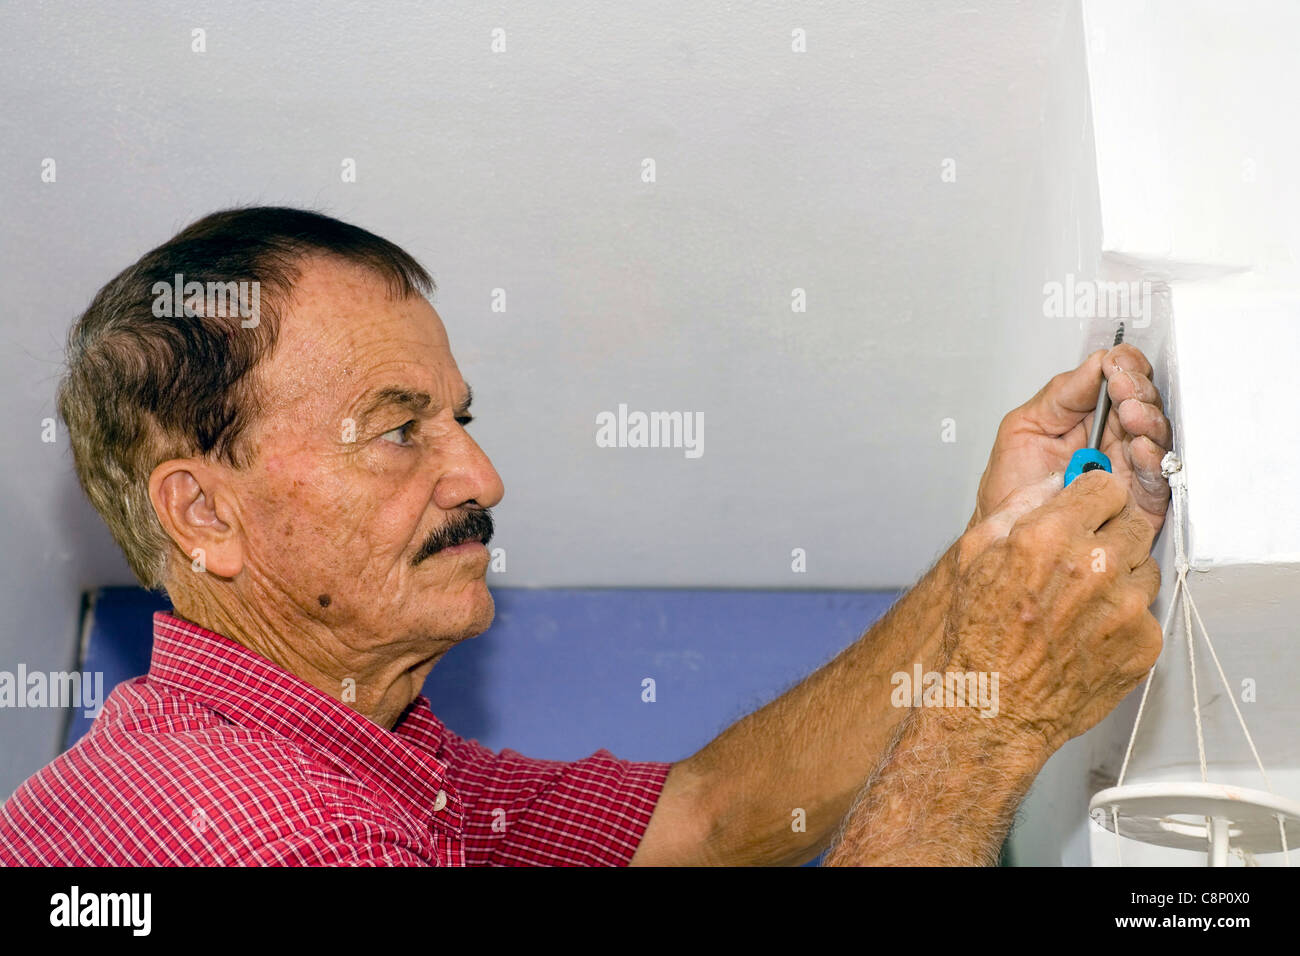 Un homme utilise un tournevis pour visser un petit creux dans un mur. Banque D'Images